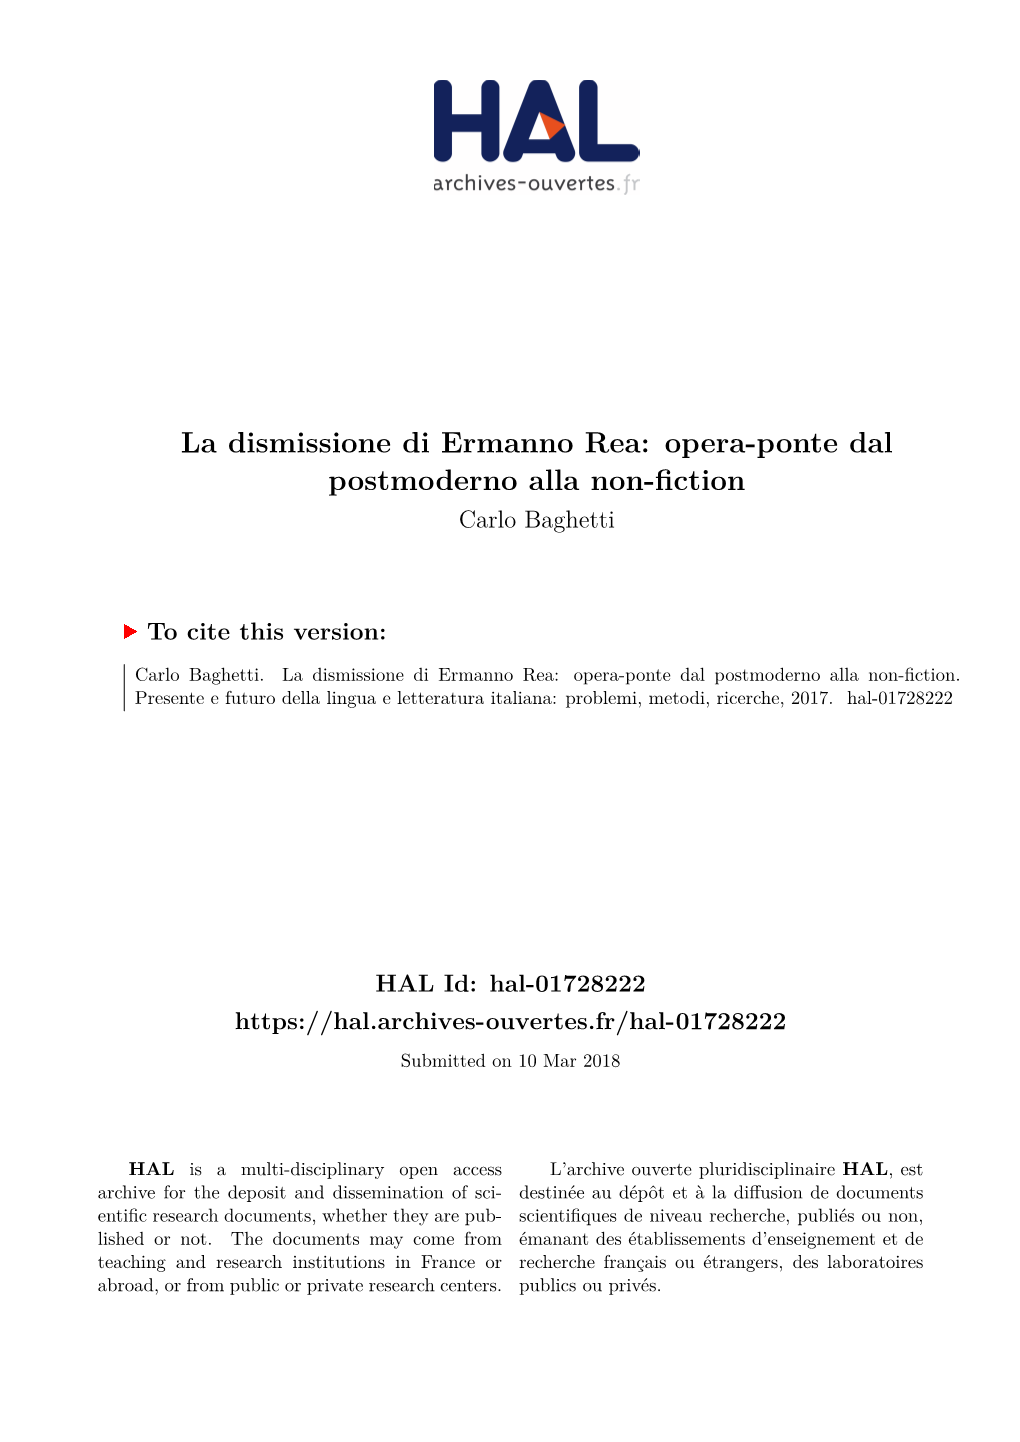 La Dismissione Di Ermanno Rea: Opera-Ponte Dal Postmoderno Alla Non-Fiction Carlo Baghetti